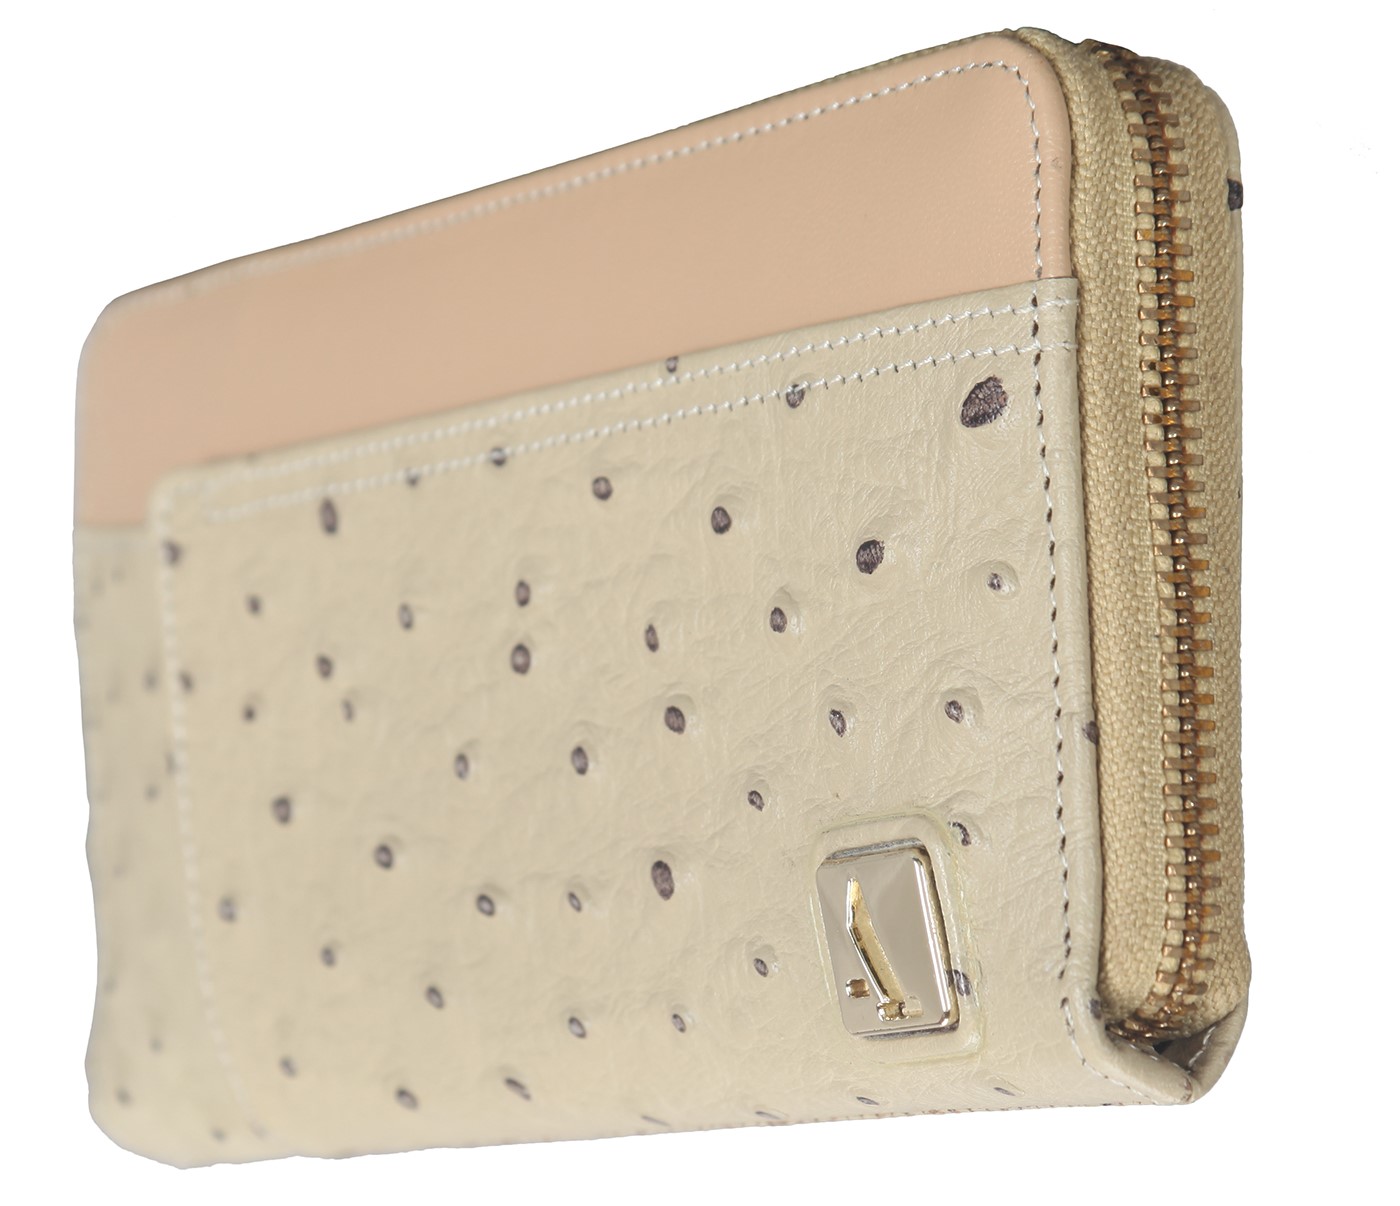 W317-Beyonce-Women's wallet cum clutch in Genuine Leather - Beige